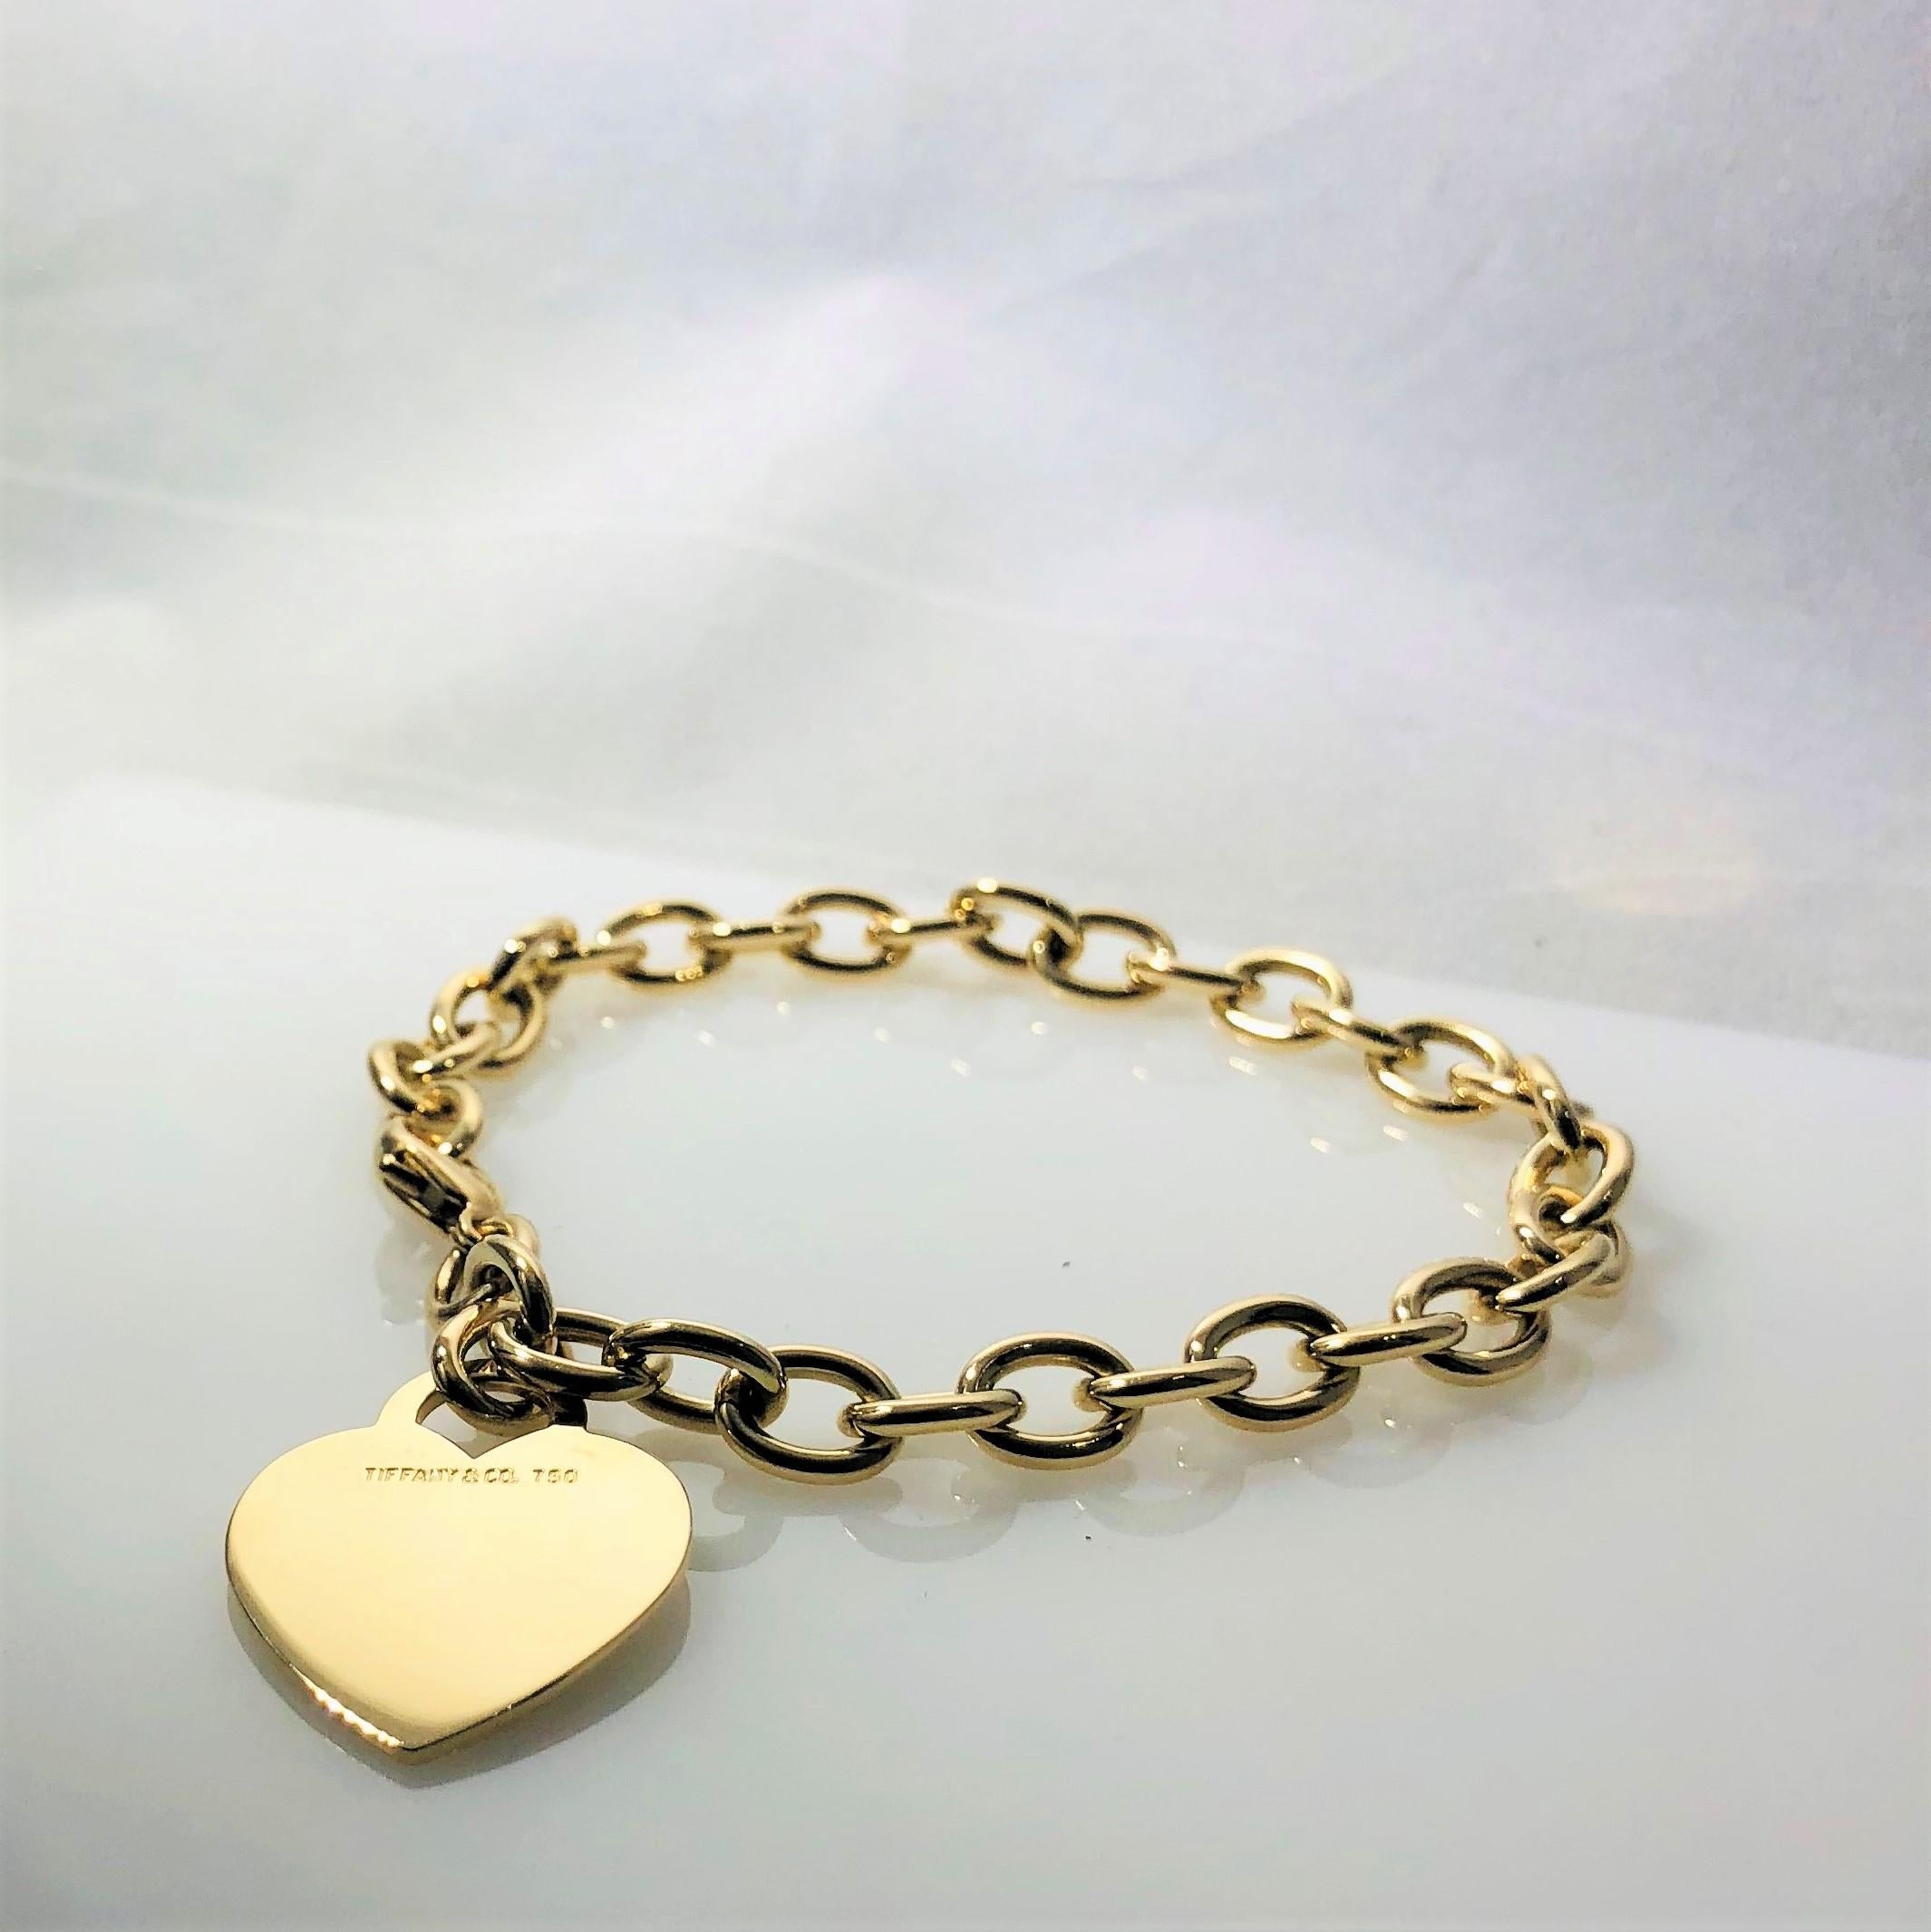 Contemporary Tiffany & Co. 18 Karat Yellow Gold Heart Tag Charm Bracelet